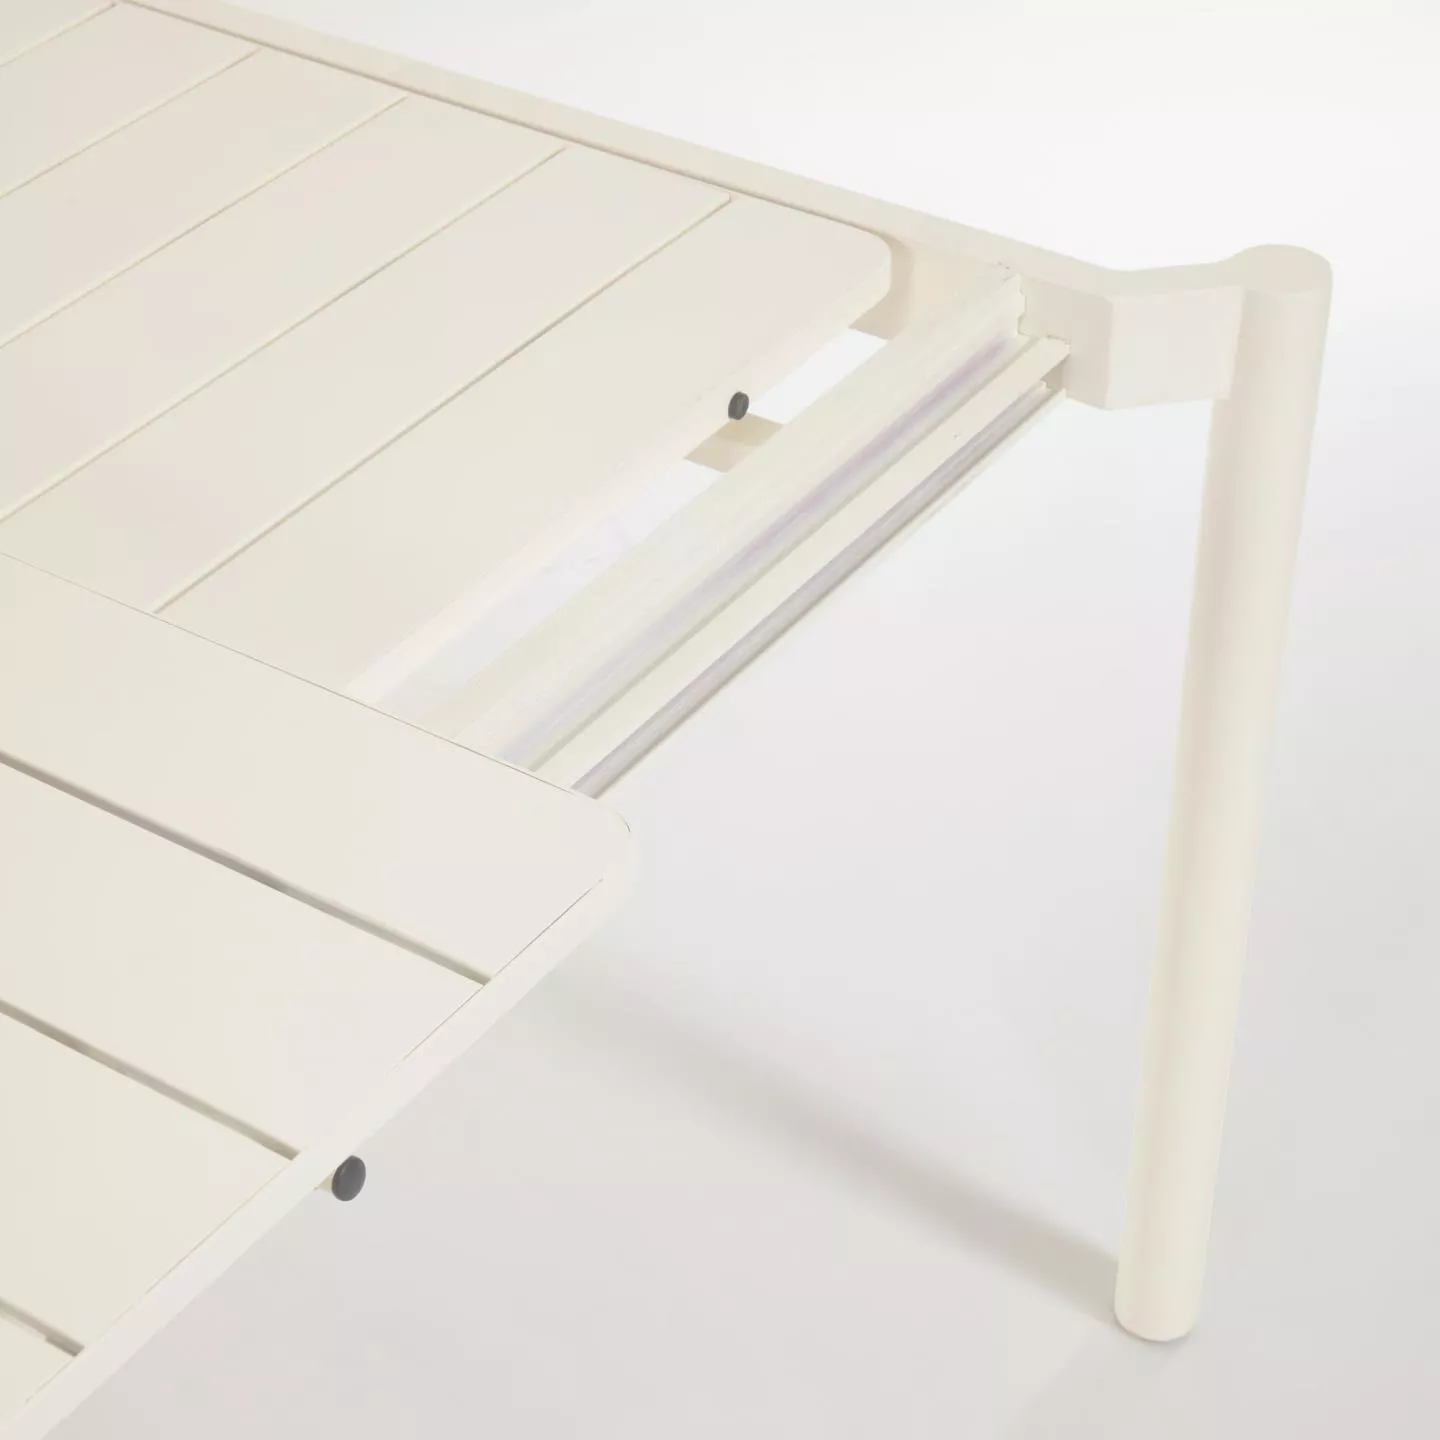 Раздвижной стол La Forma Zaltana белый 140 x 90 см